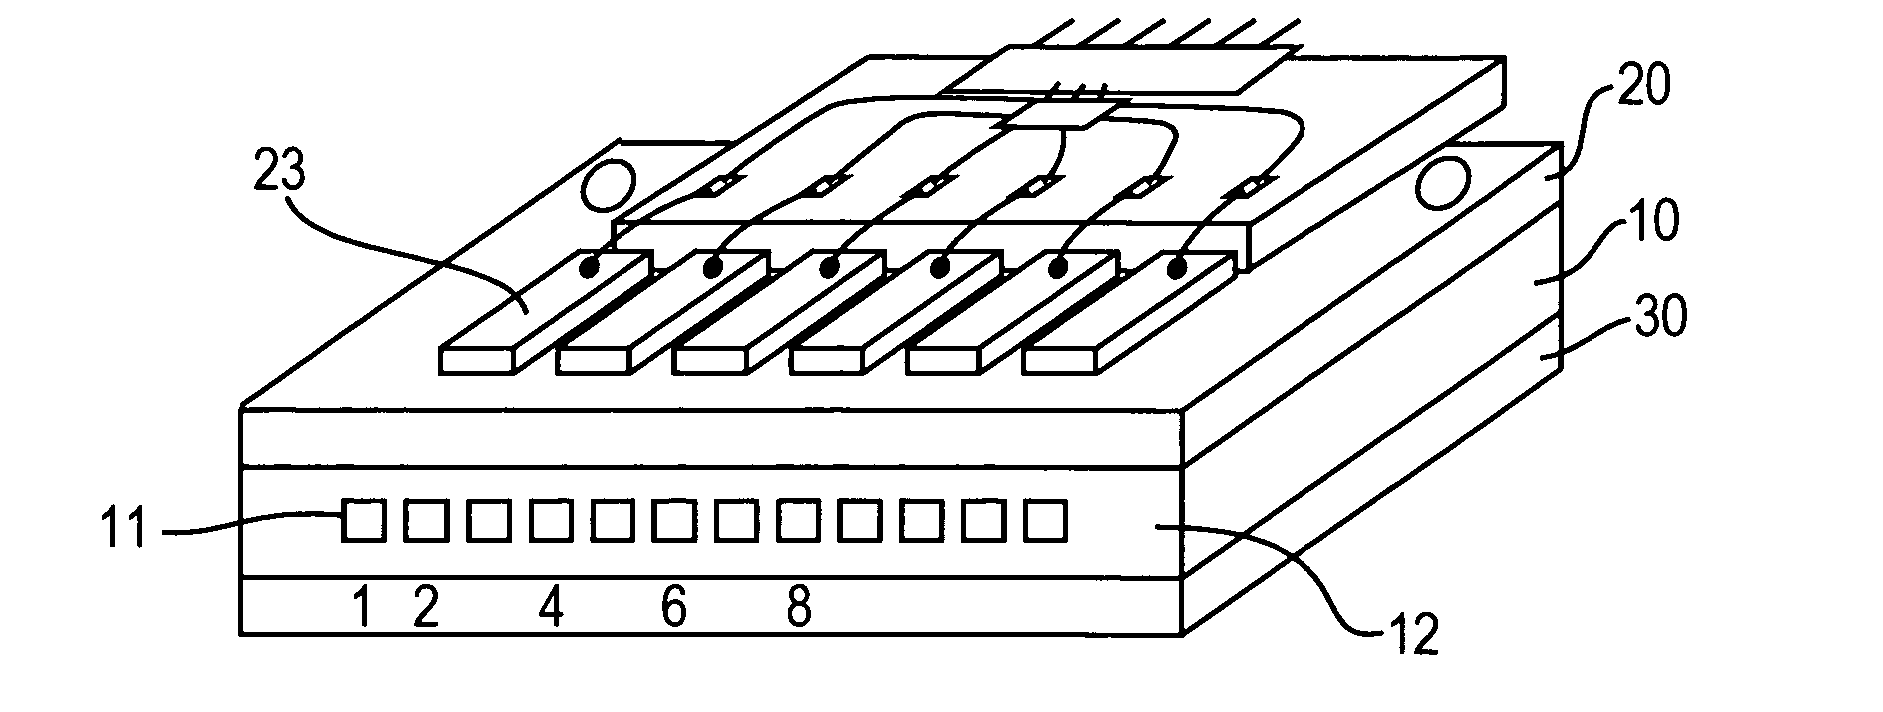 Fluid jet print module